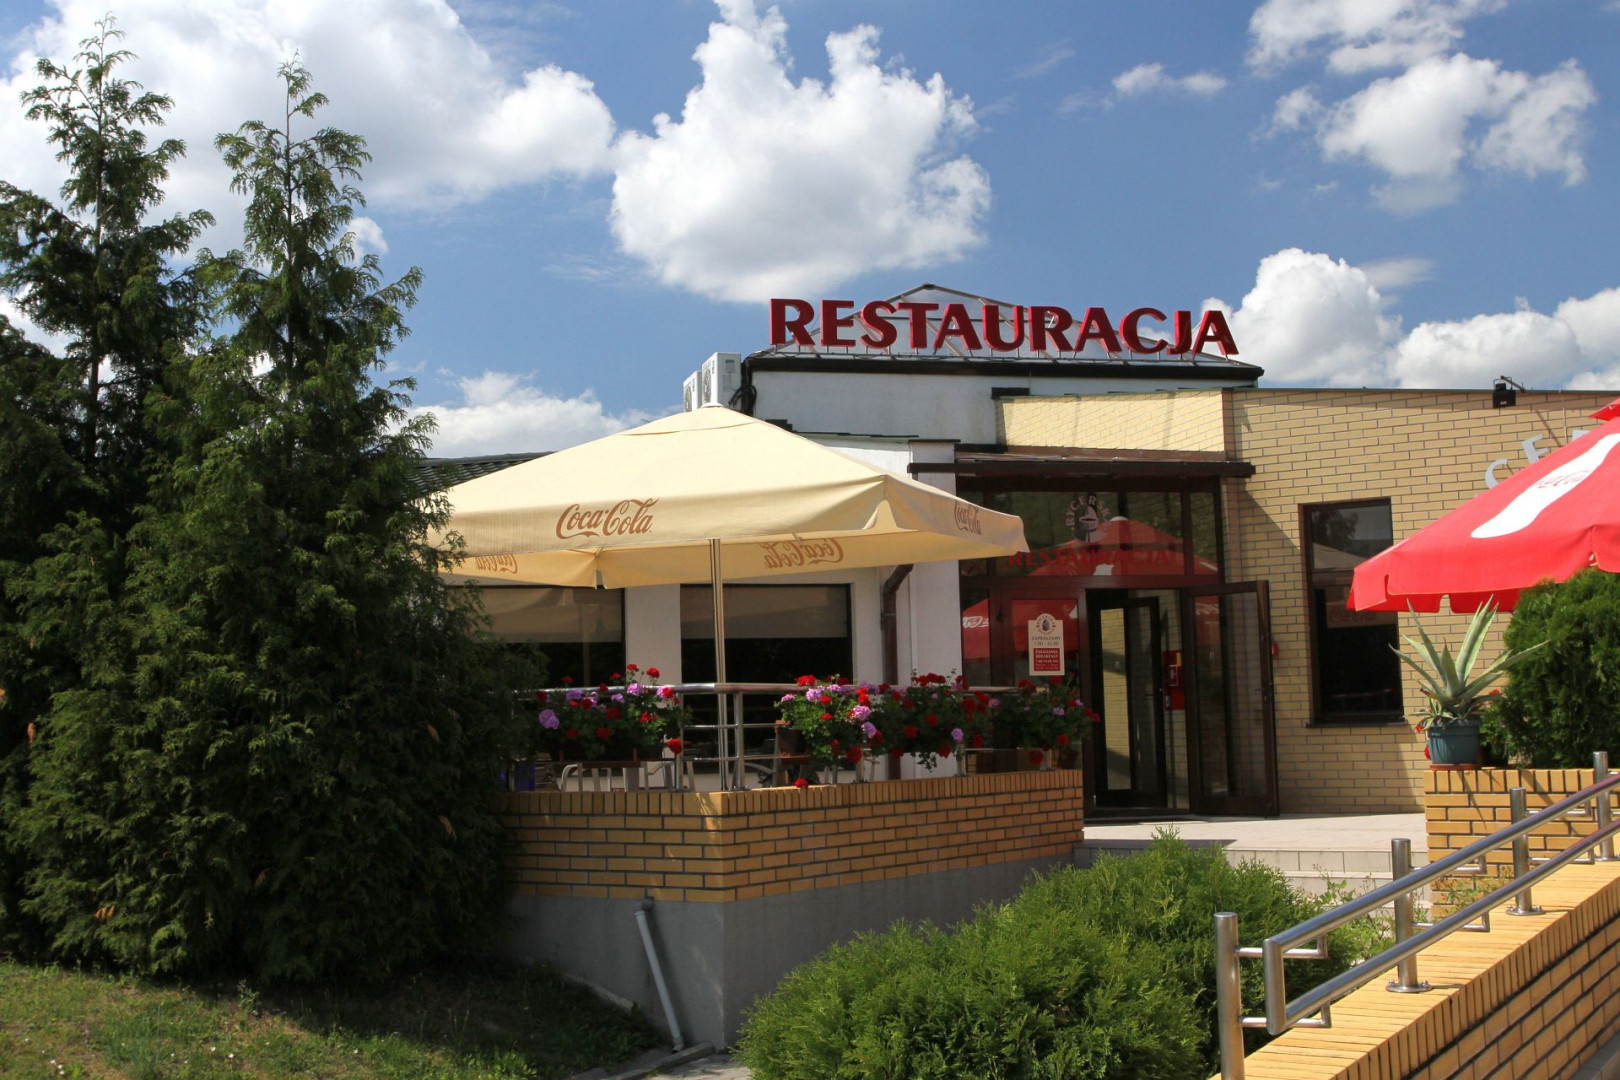 Restauracja Rycerska z zewntrz (fot. A Ciereszko)